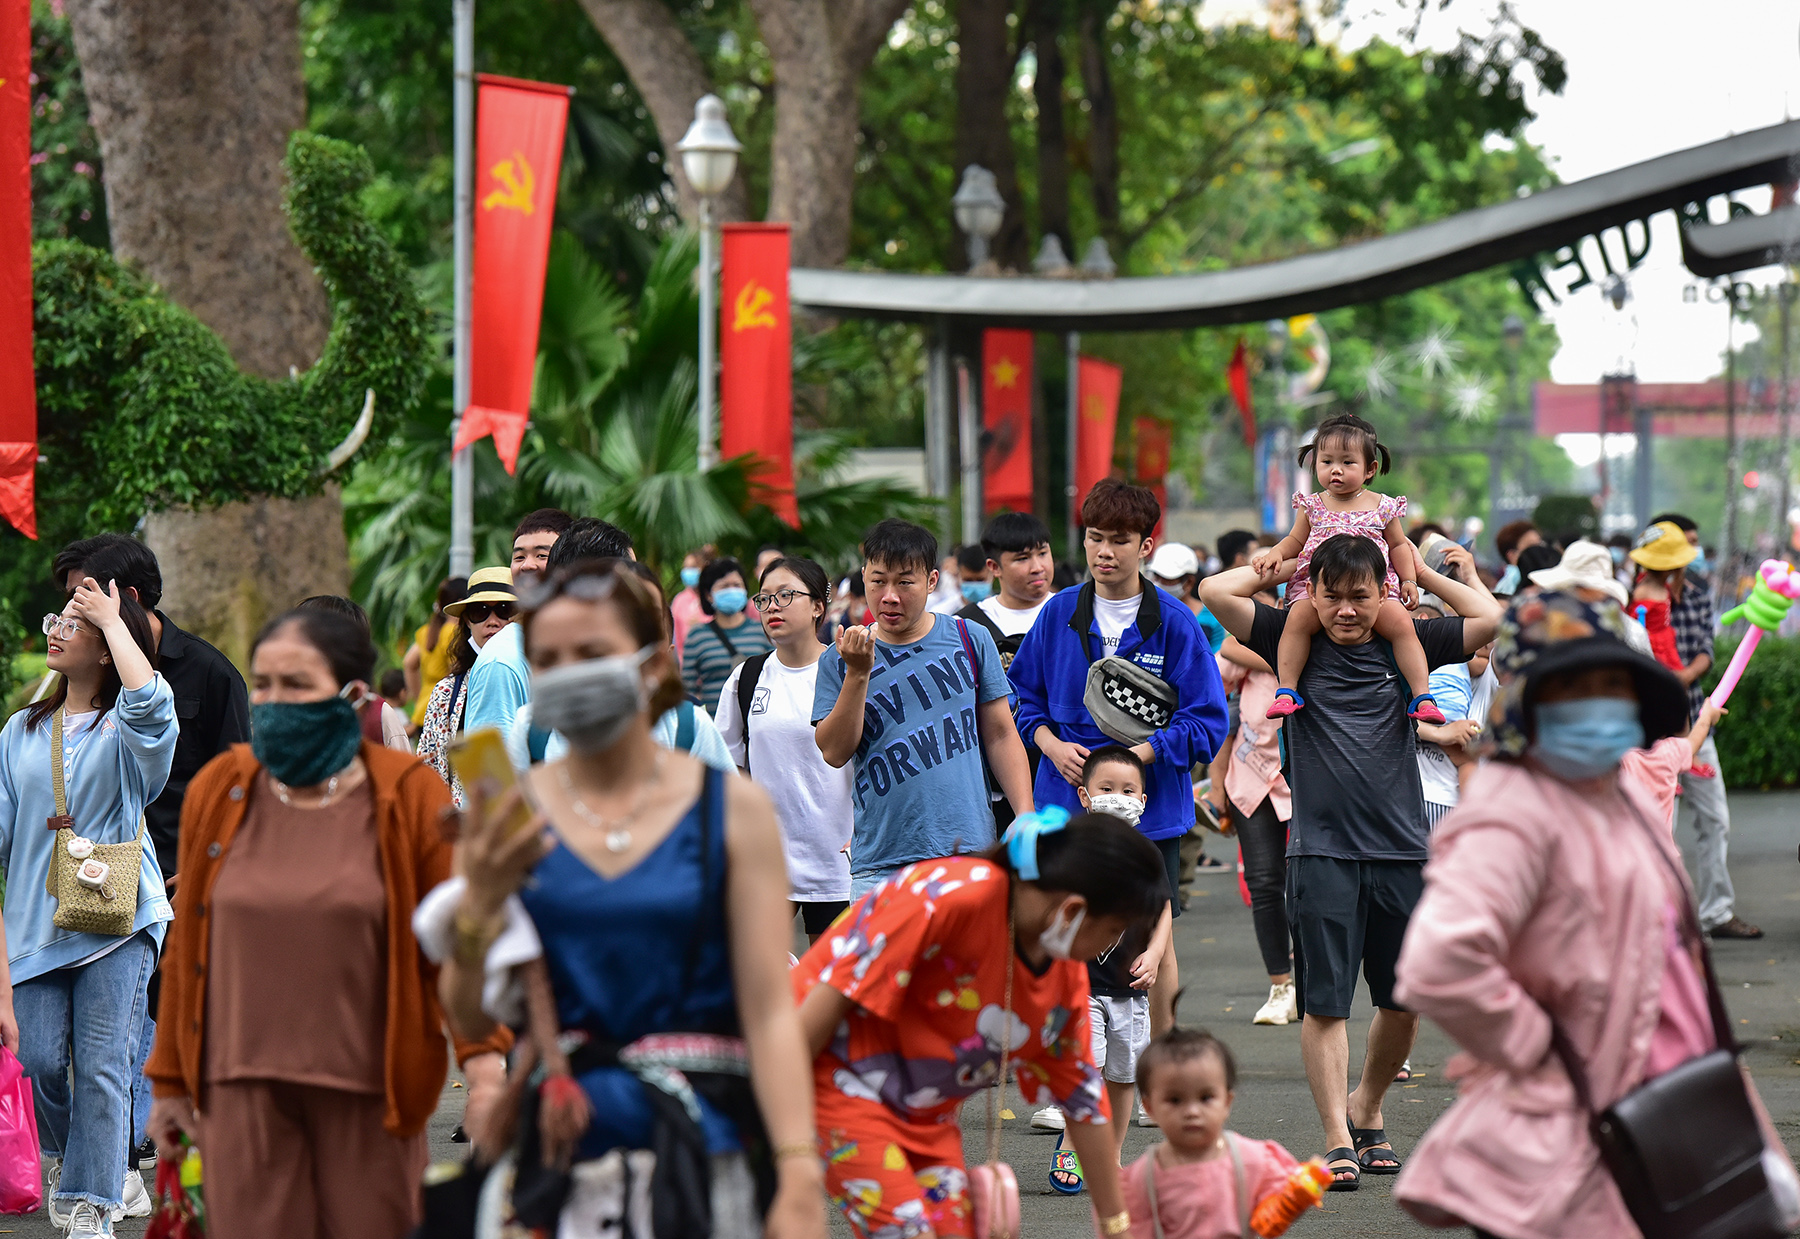 Sáng 21/4, rất đông người dân thành phố đổ về Thảo Cầm Viên Sài Gòn (quận 1, TP.HCM) để tham quan, vui chơi ngày lễ Giỗ tổ Hùng Vương (mùng 10/3 Âm lịch).